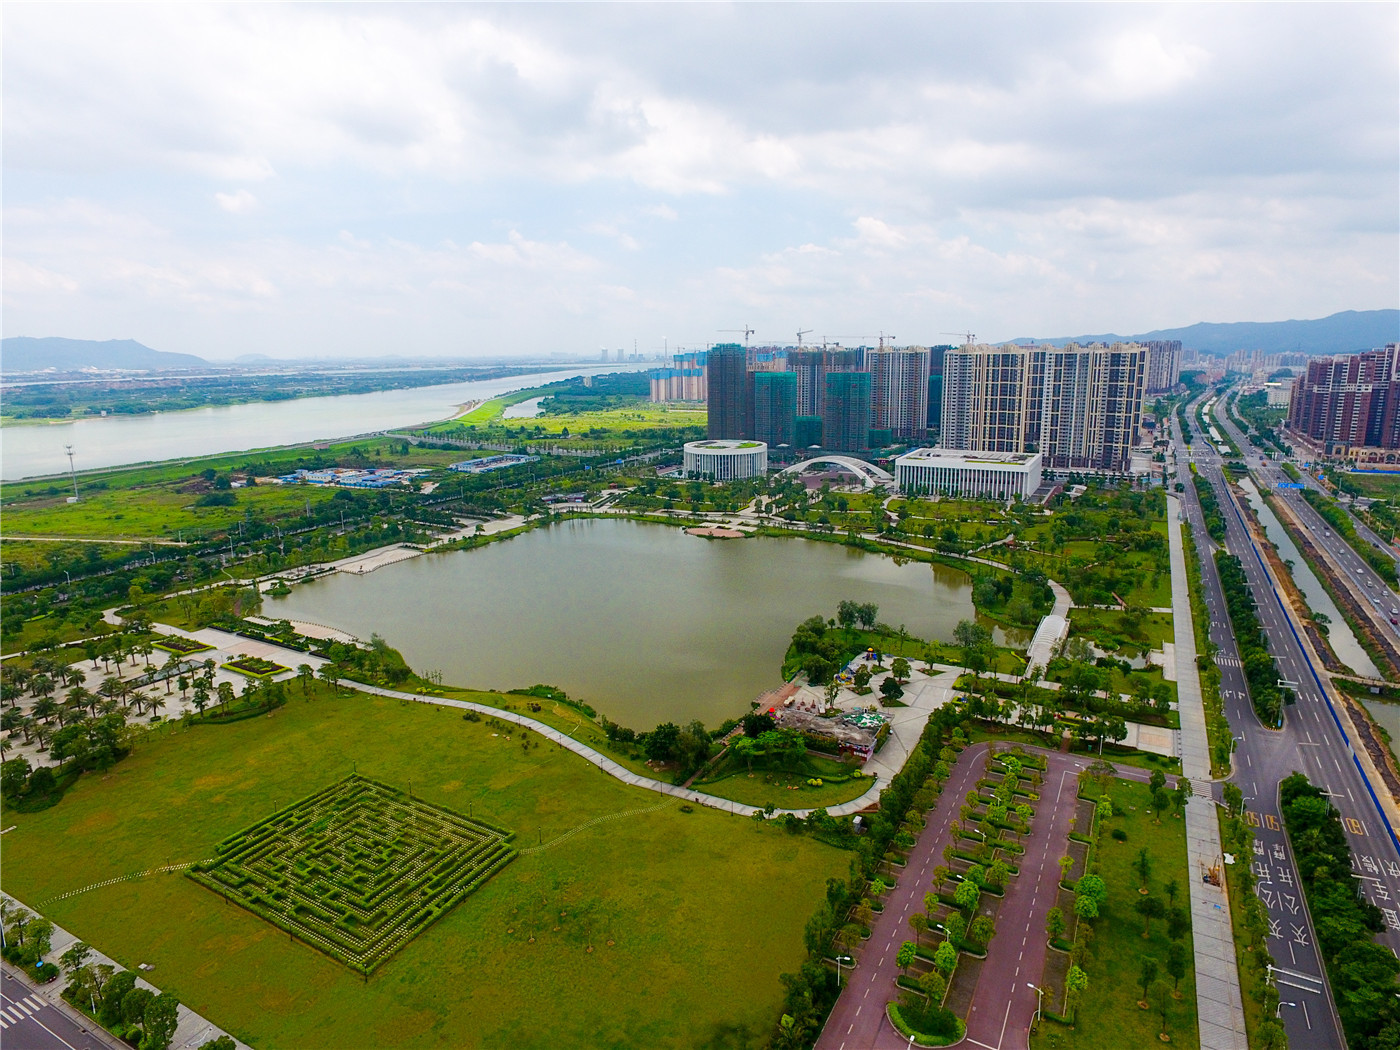 西江产业新城生态环境优美，优质项目纷纷落户。智慧监督平台的引用，畅通了部门之间的信息交流，为项目落实提供了强大推动力。西江产业新城供图